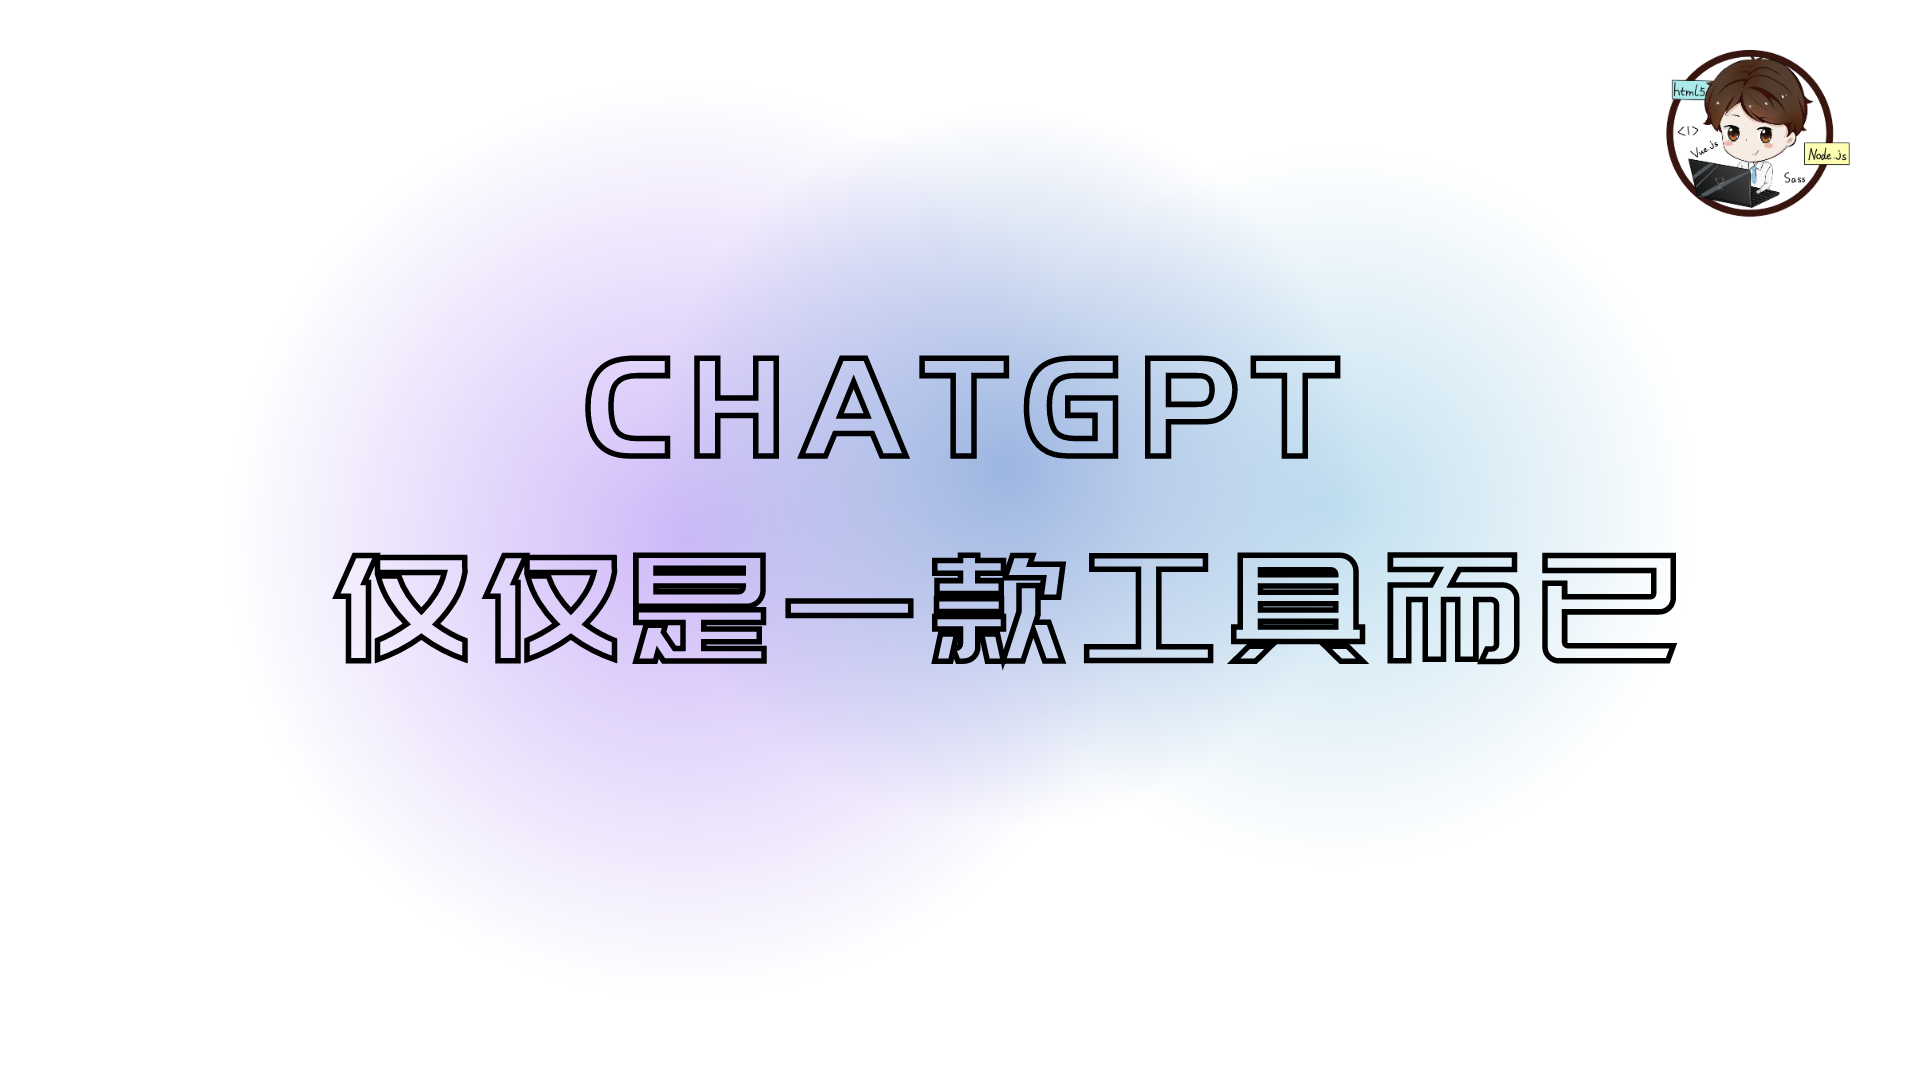 ChatGPT 仅仅是一款工具而已 | 社区征文